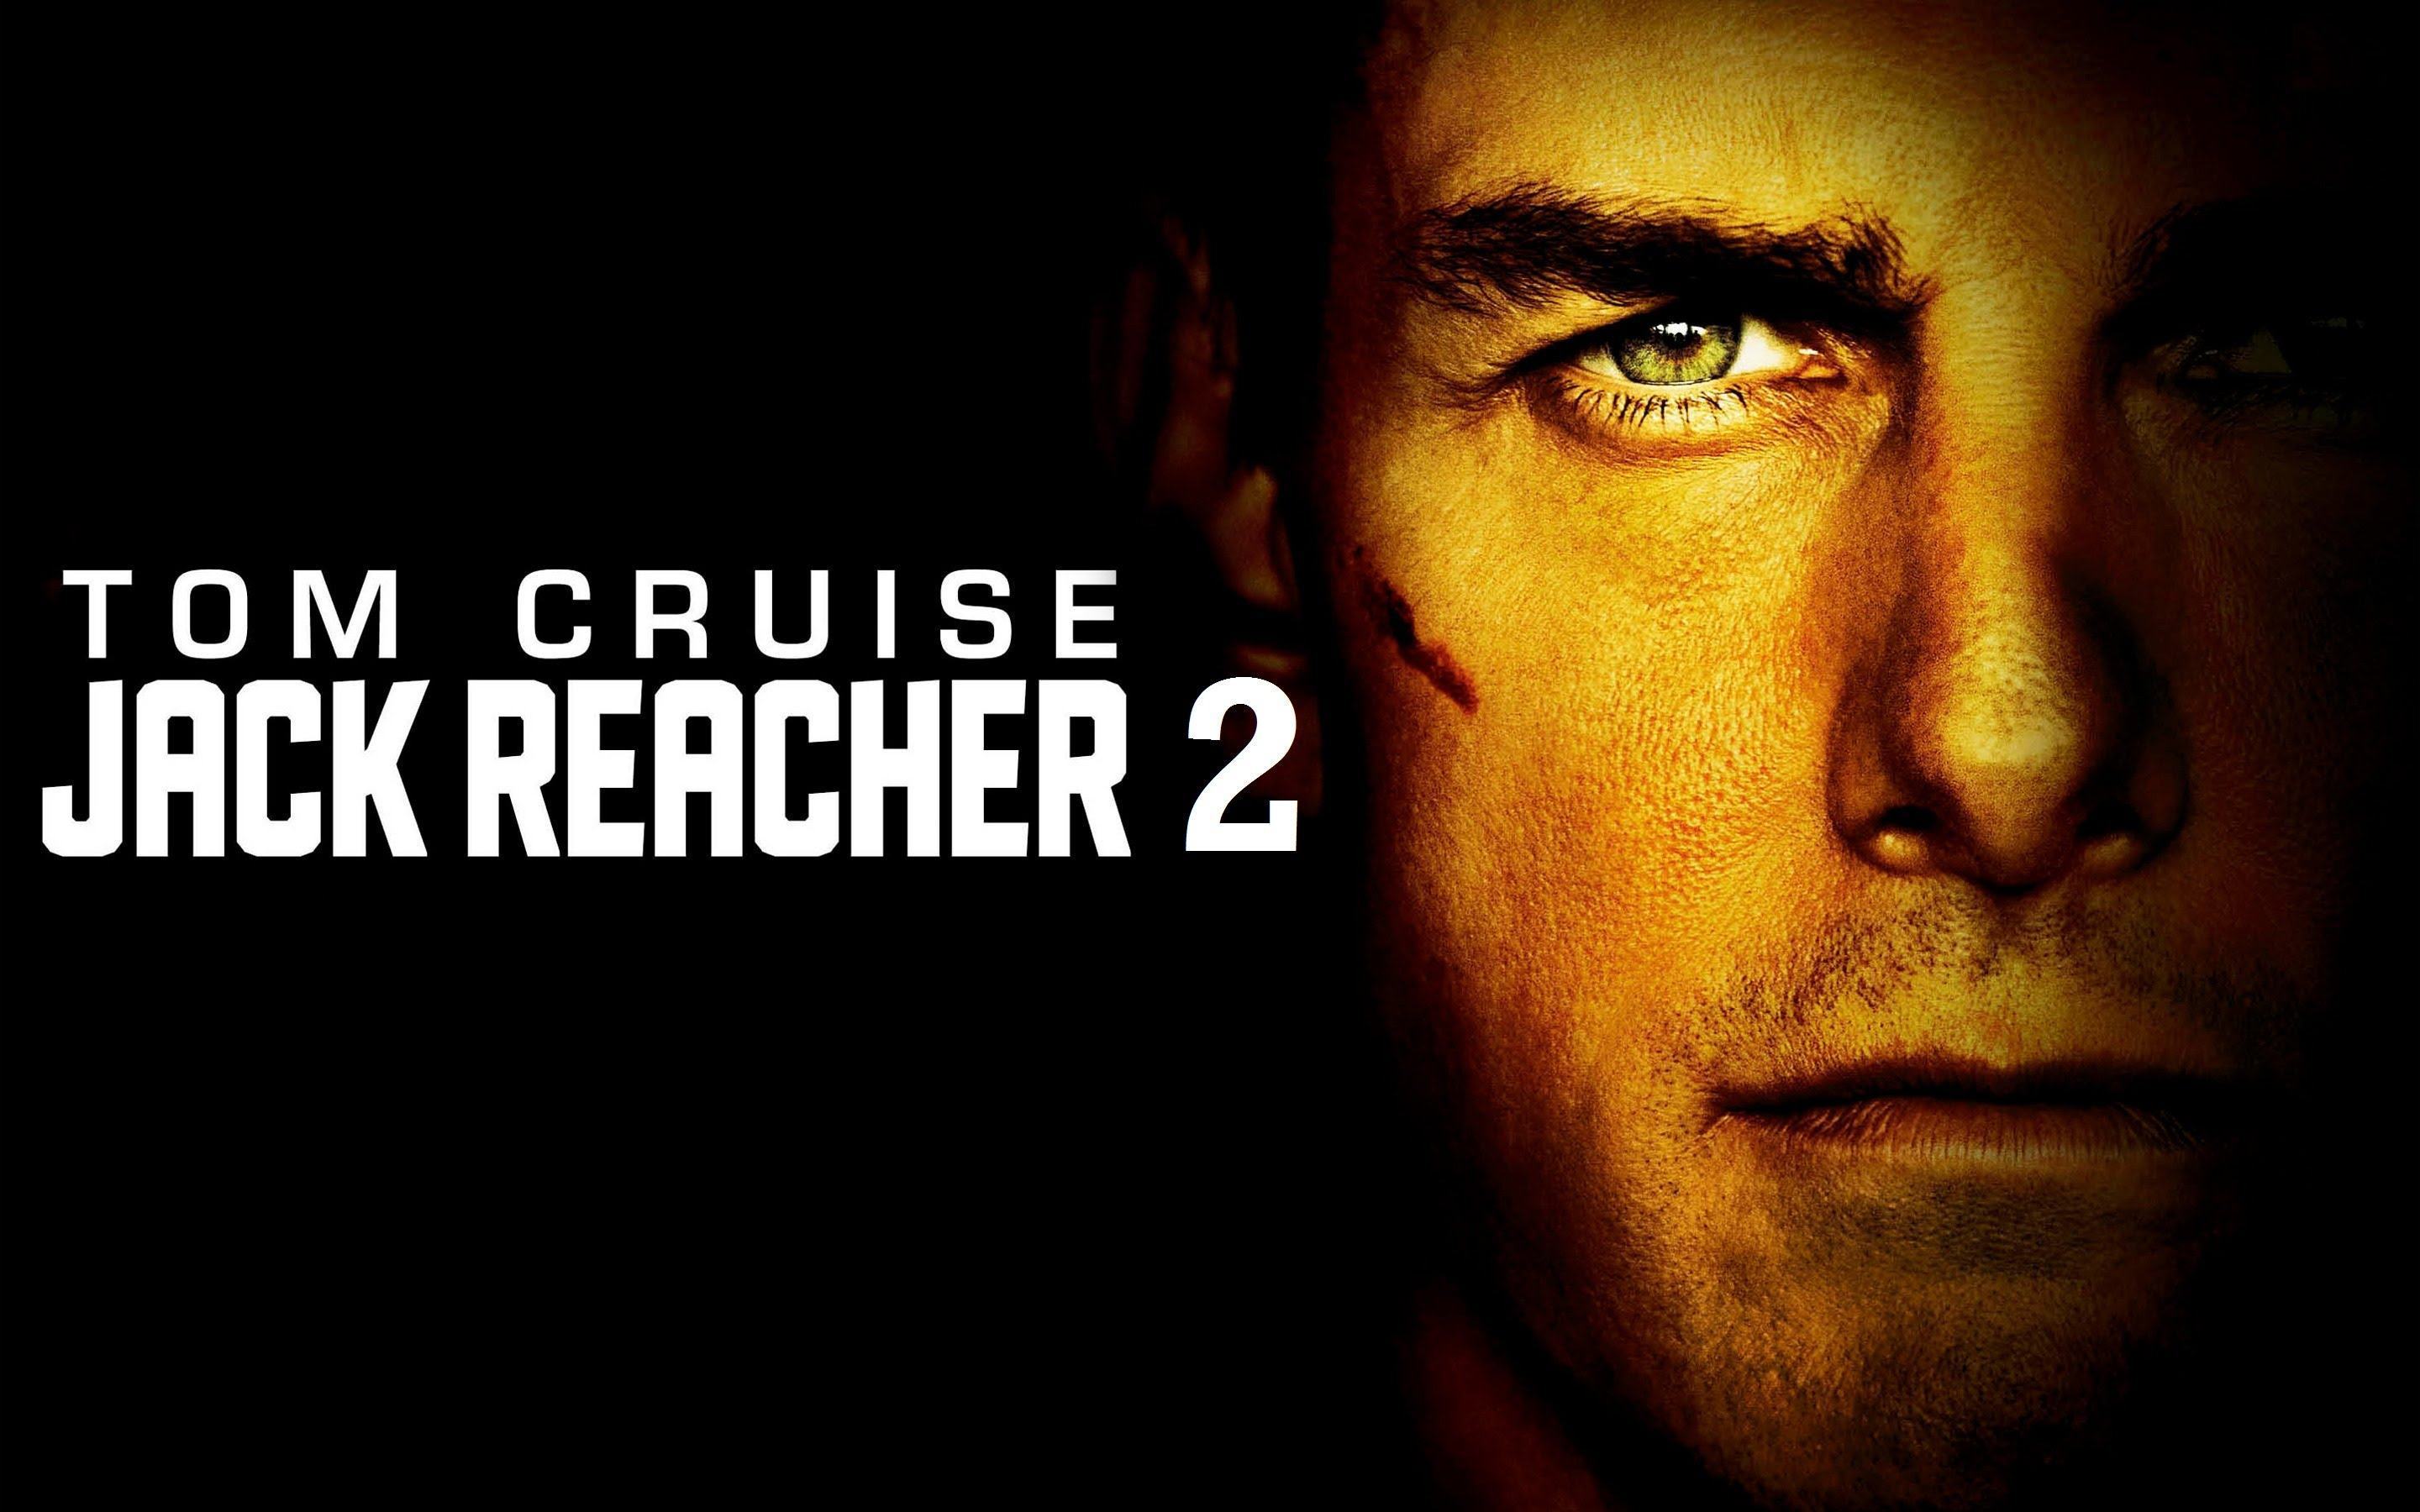 Assista ao trailer completo de Jack Reacher 2, protagonizado por Tom Cruise